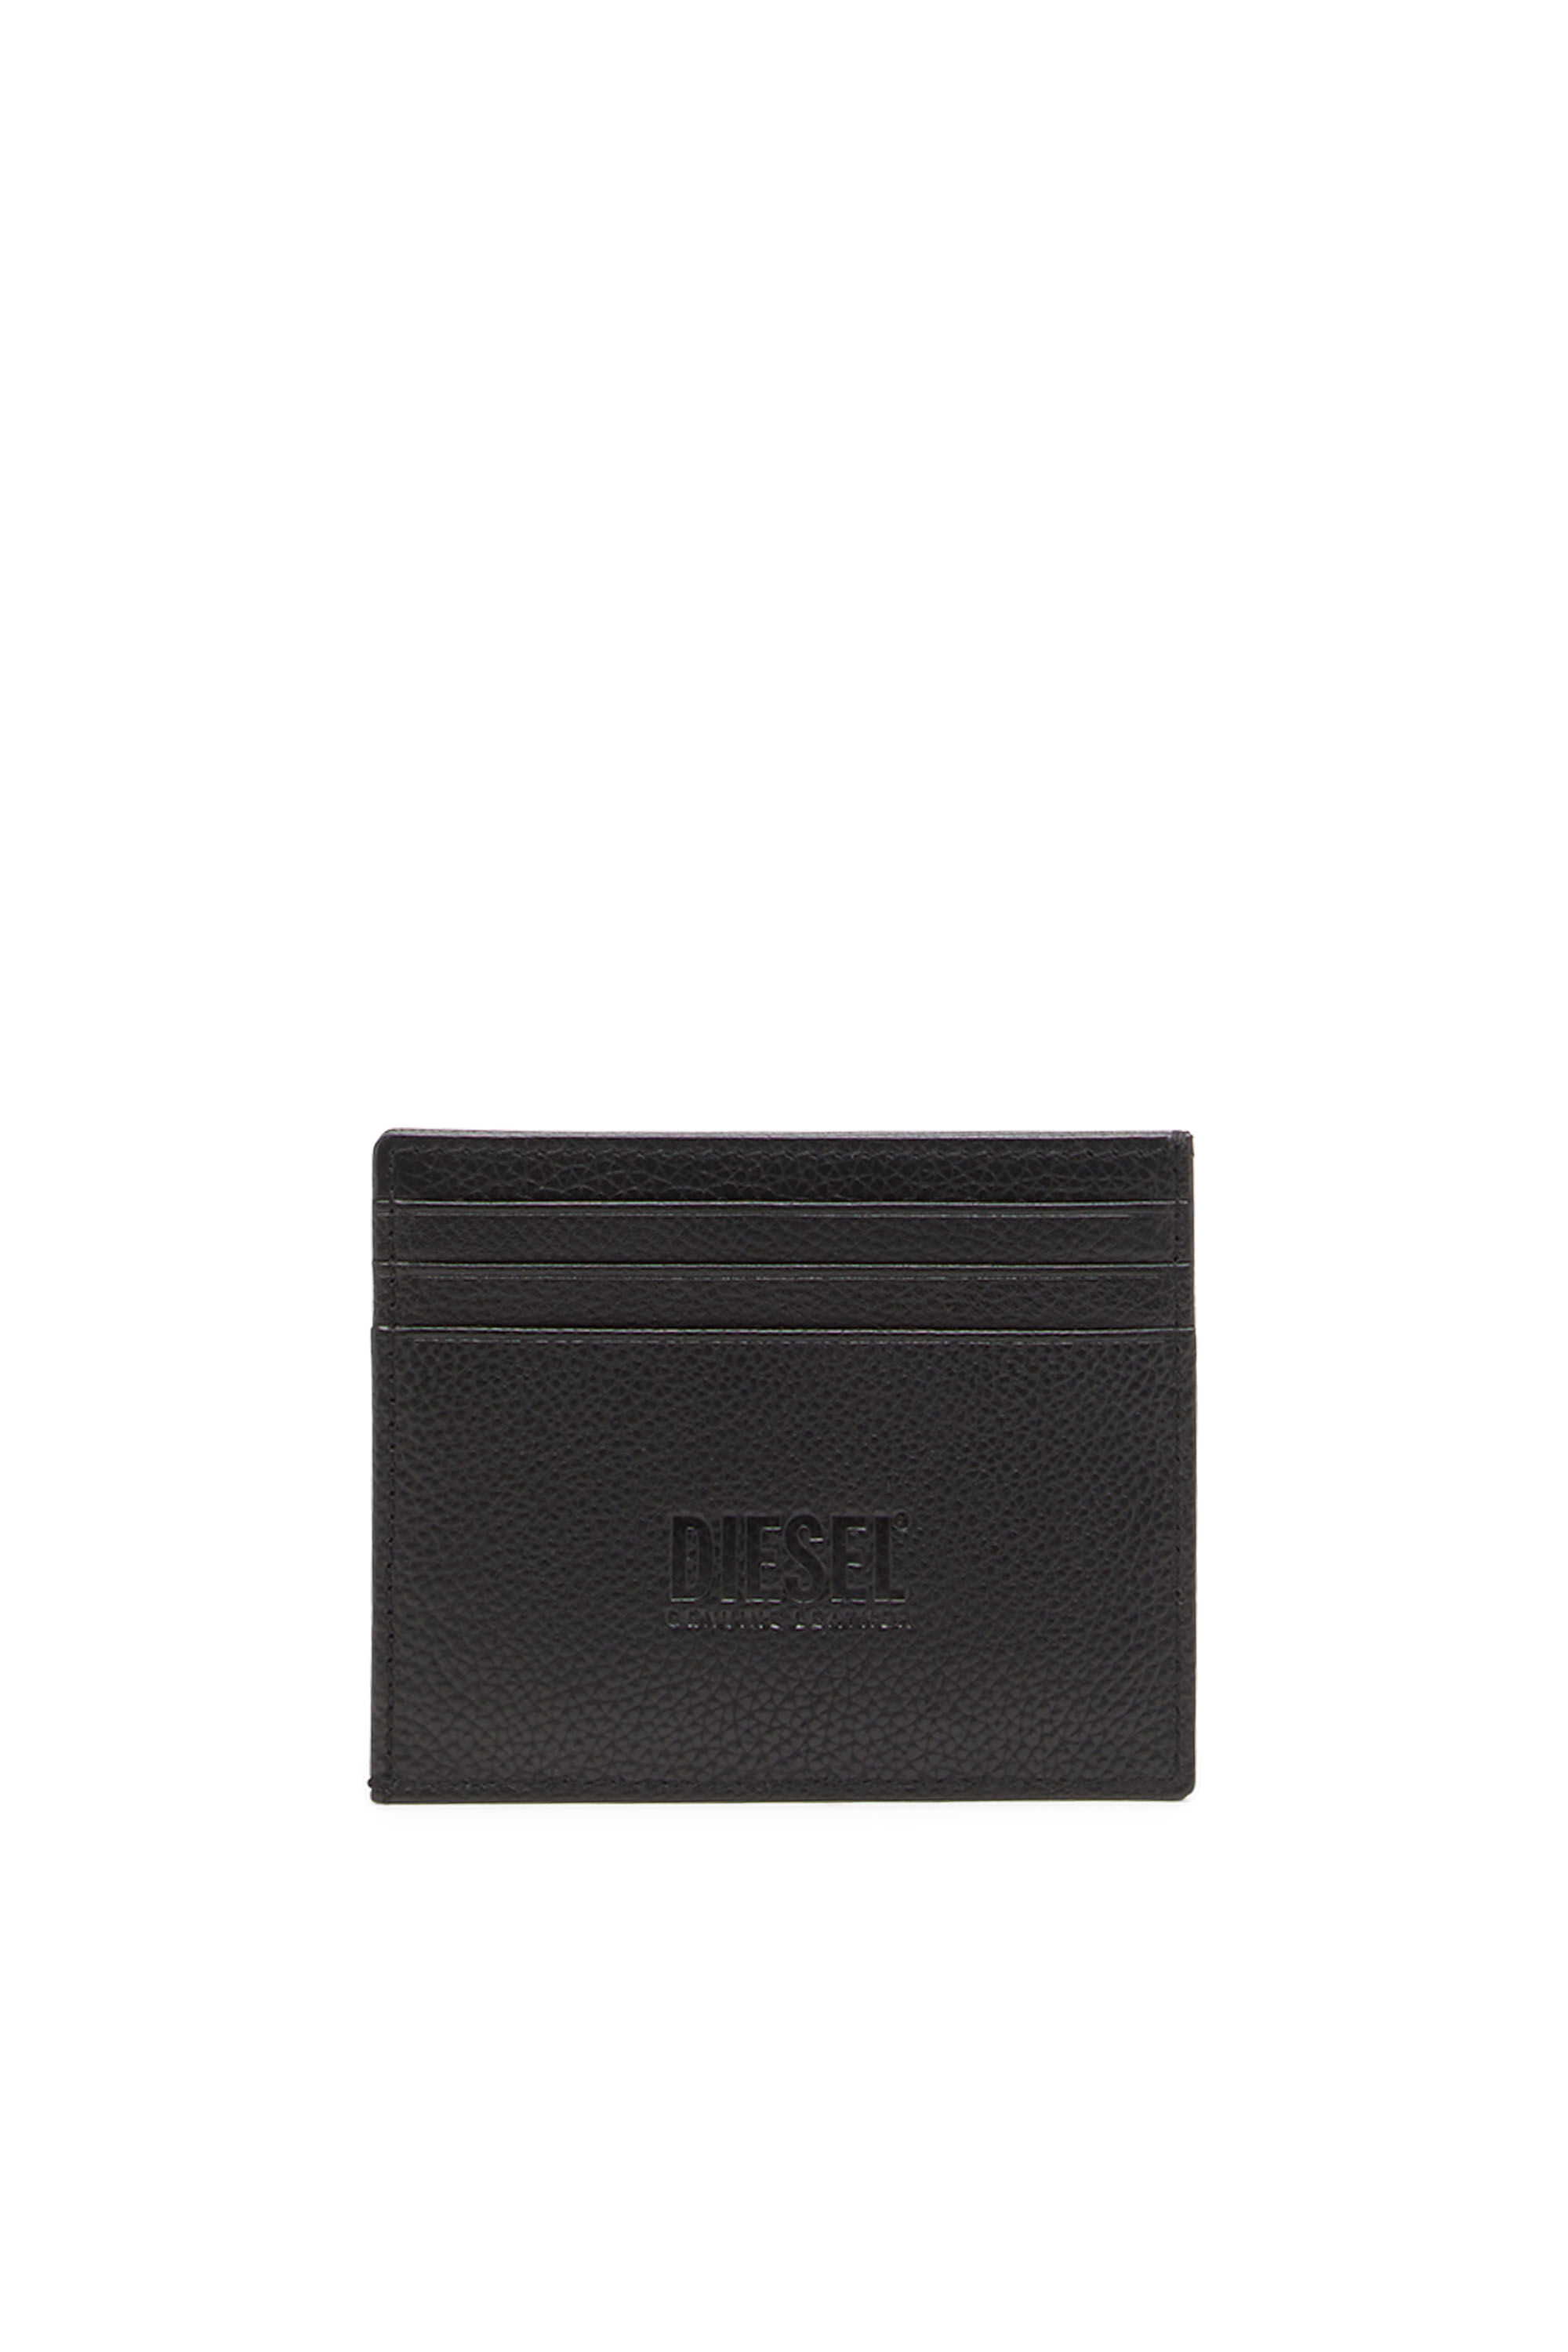 Diesel - CARD CASE, Noir - Image 2